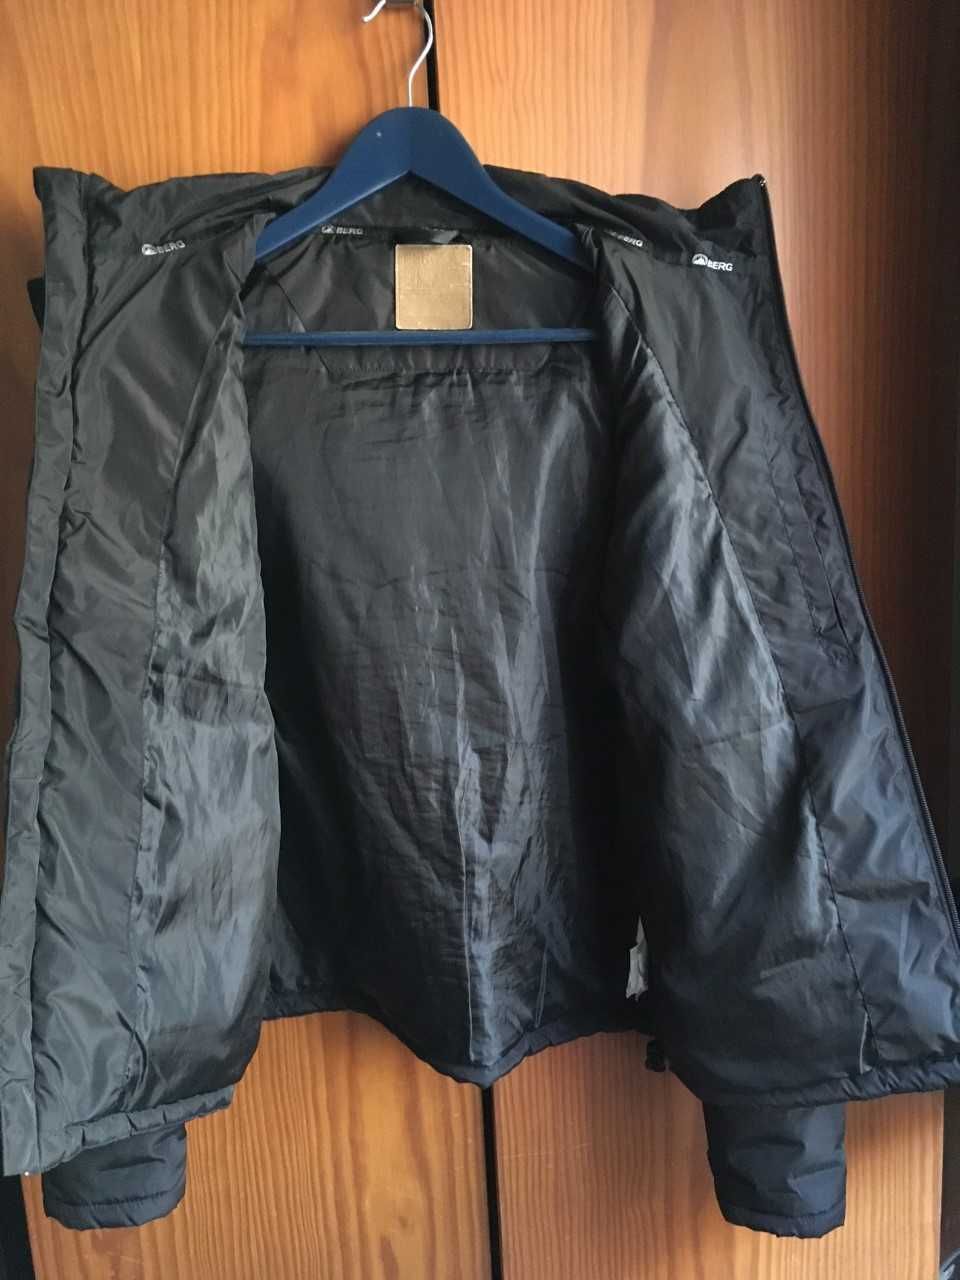 Berg Outdoor - blusão quispo preto - tamanho S